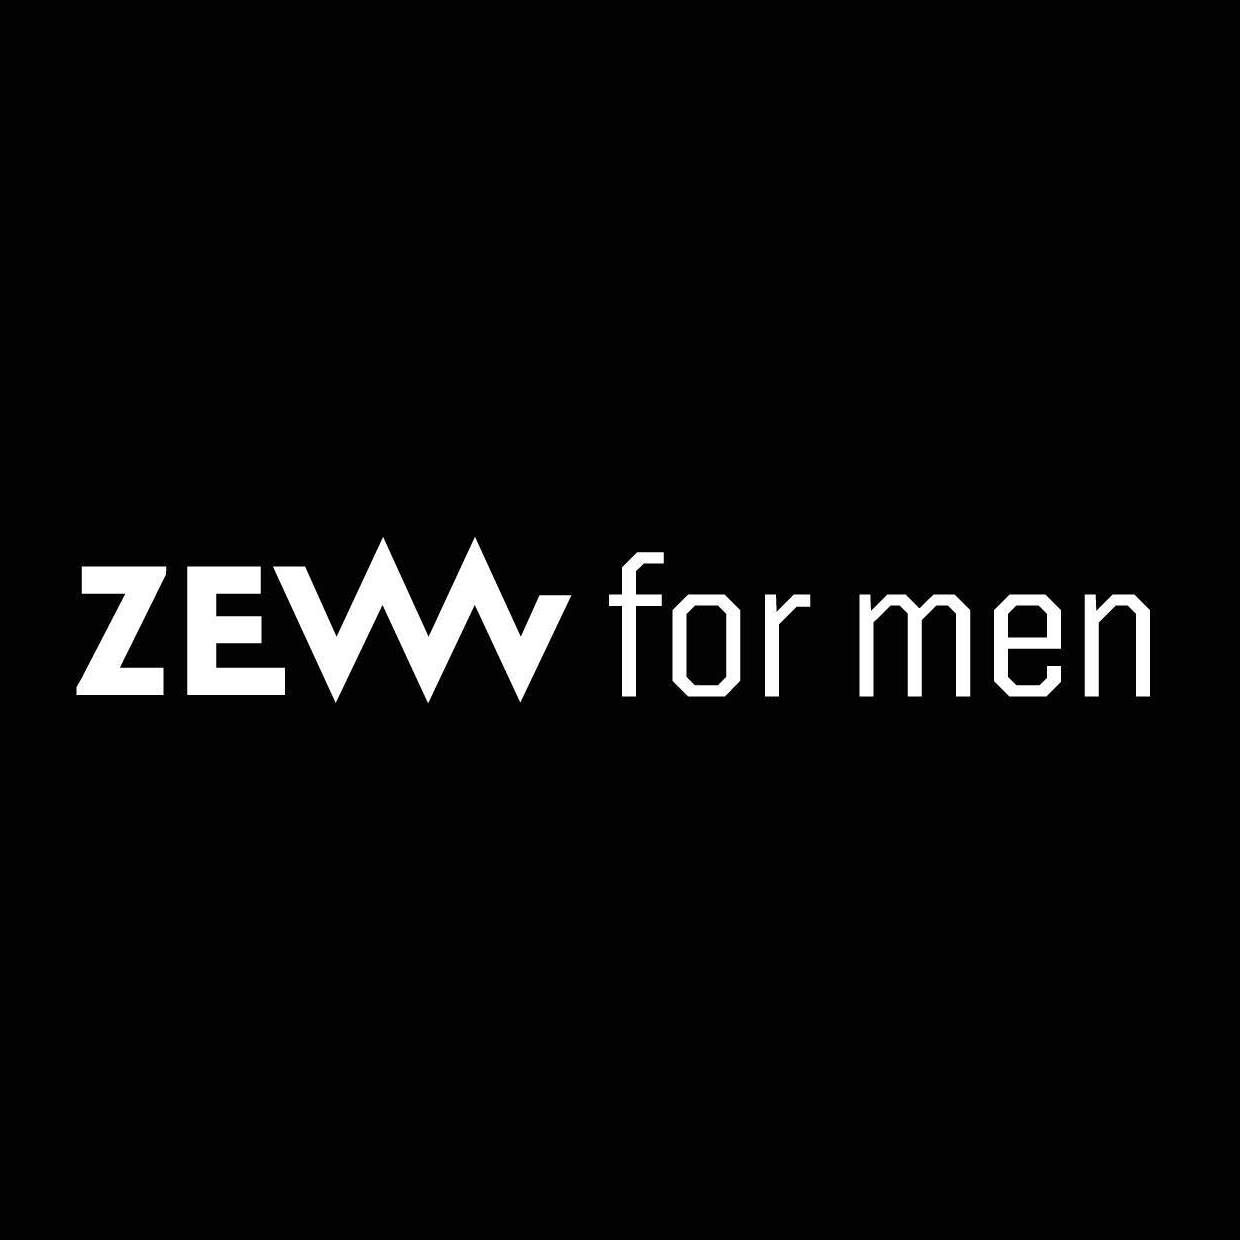 ZEW FOR MEN